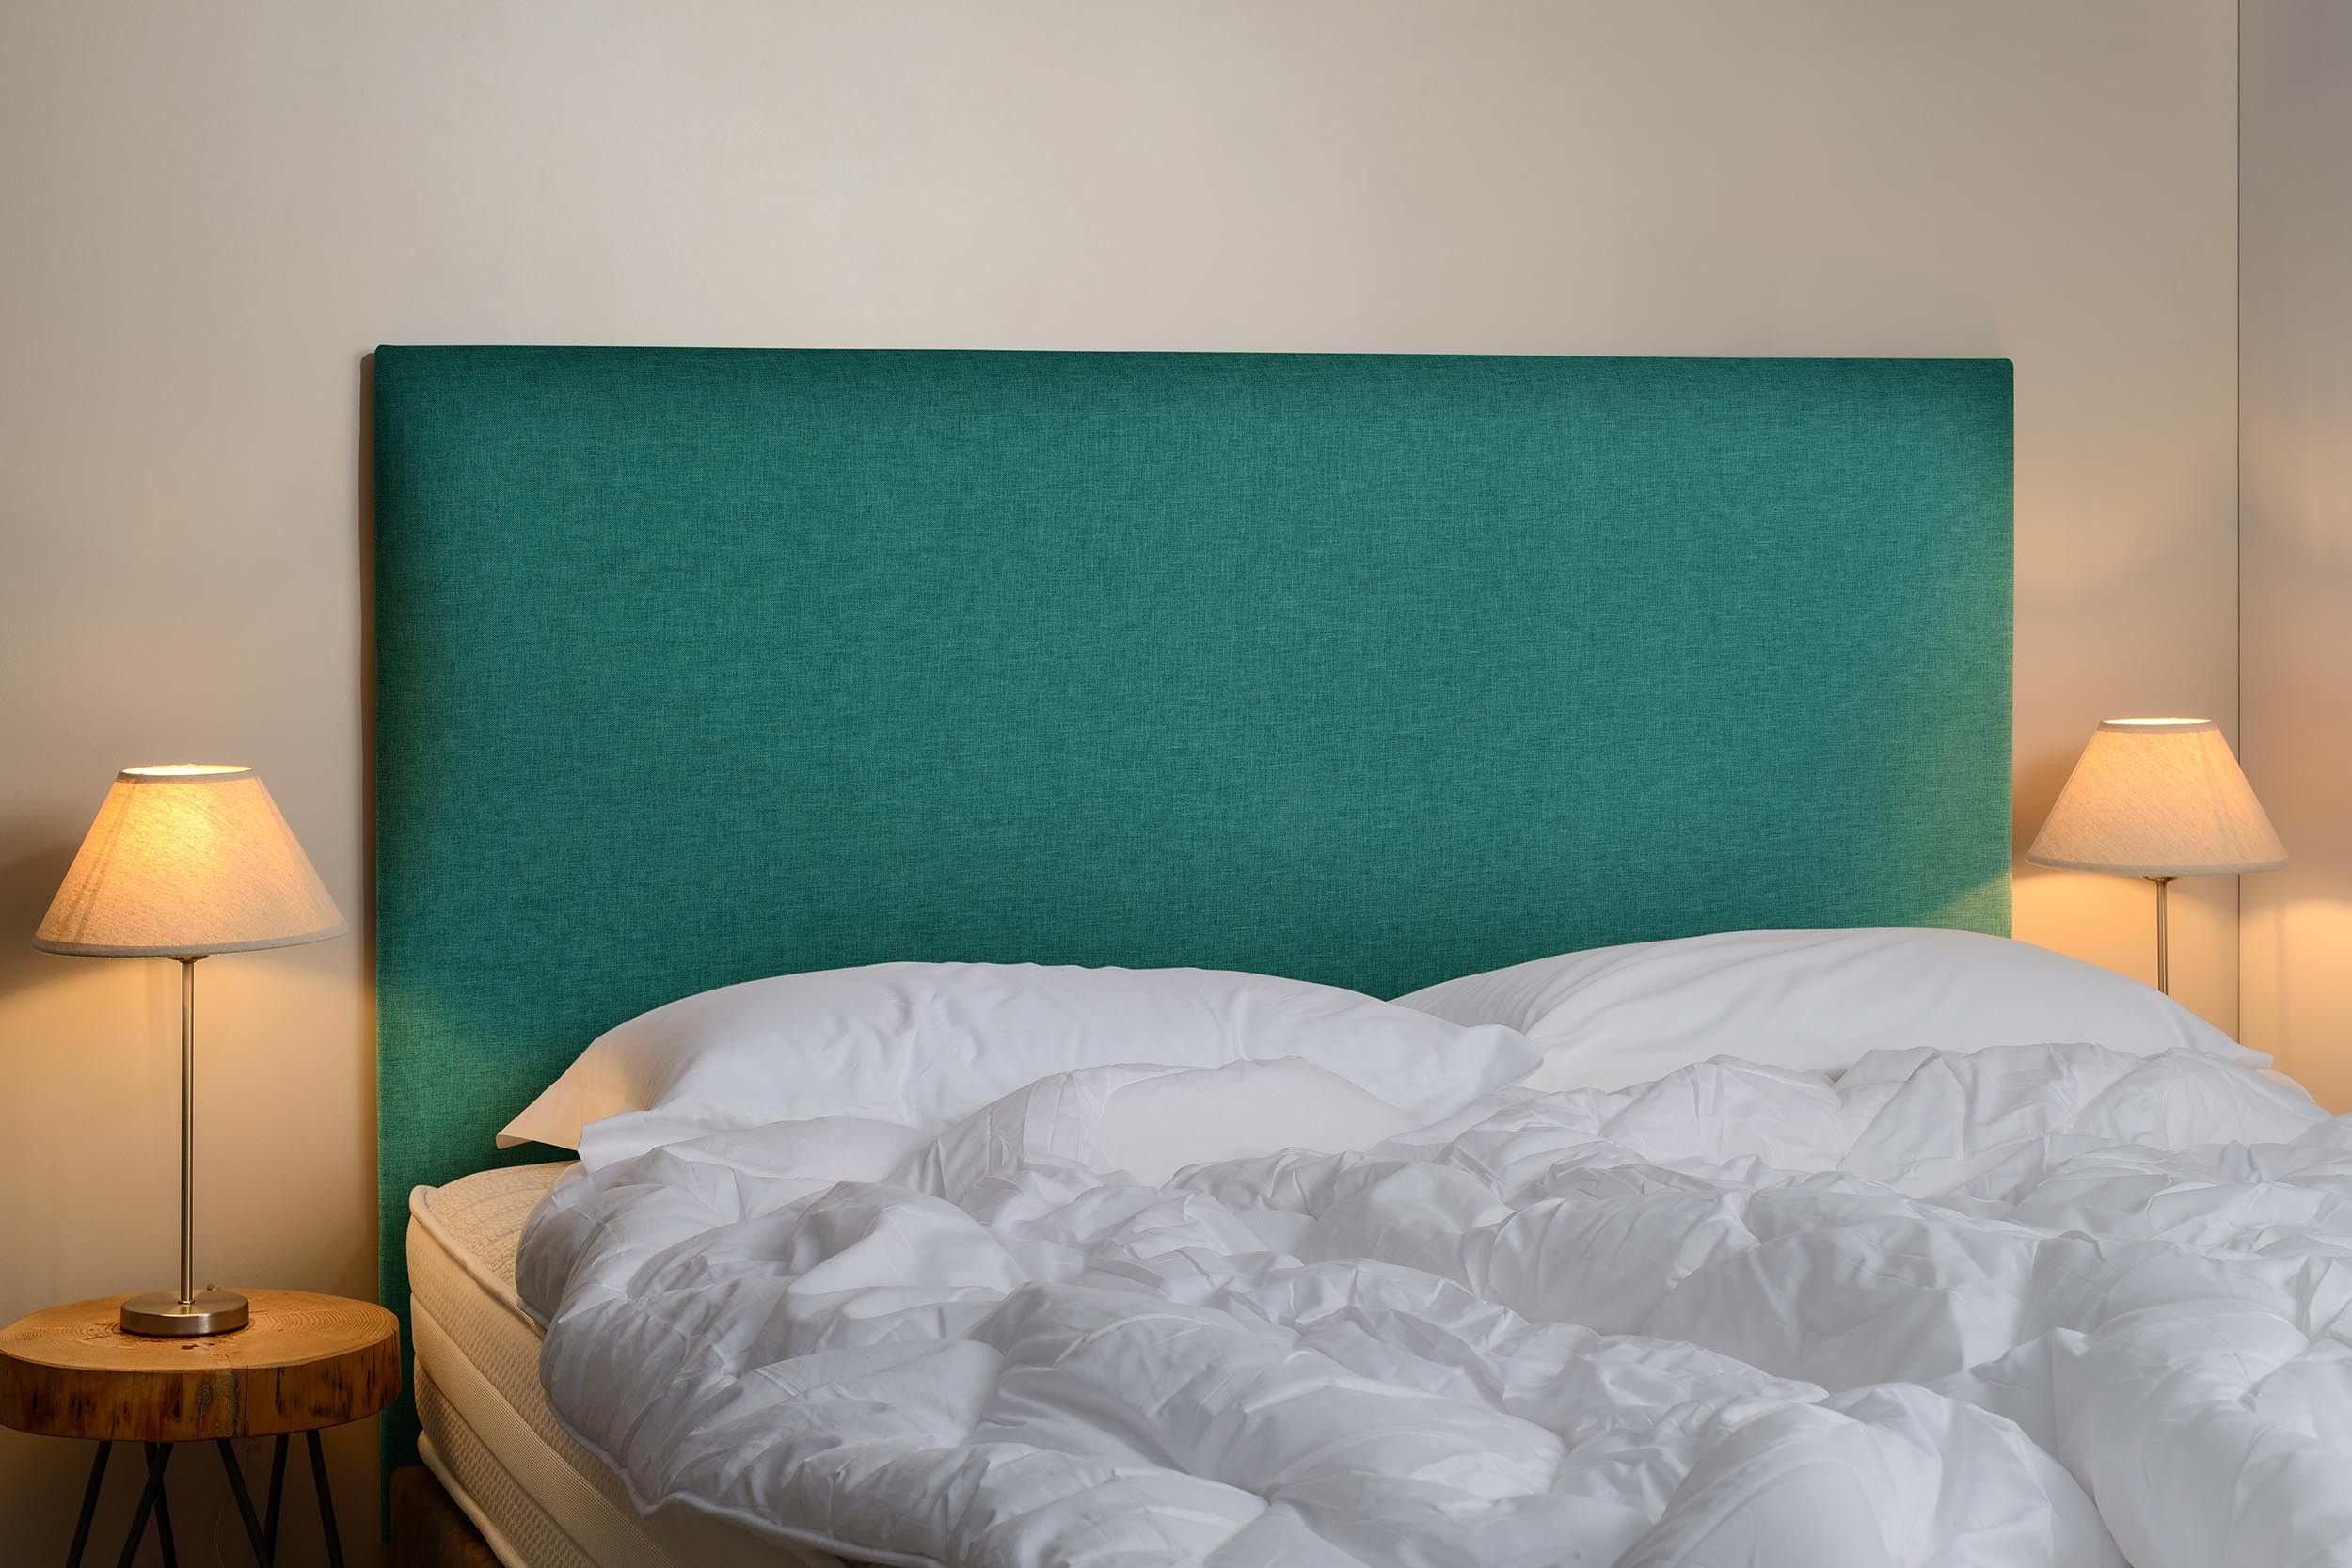 Tête de lit, pas cher, coton, turquoise, chambre, déco, confortable, campagne, 90,120,140,160,180